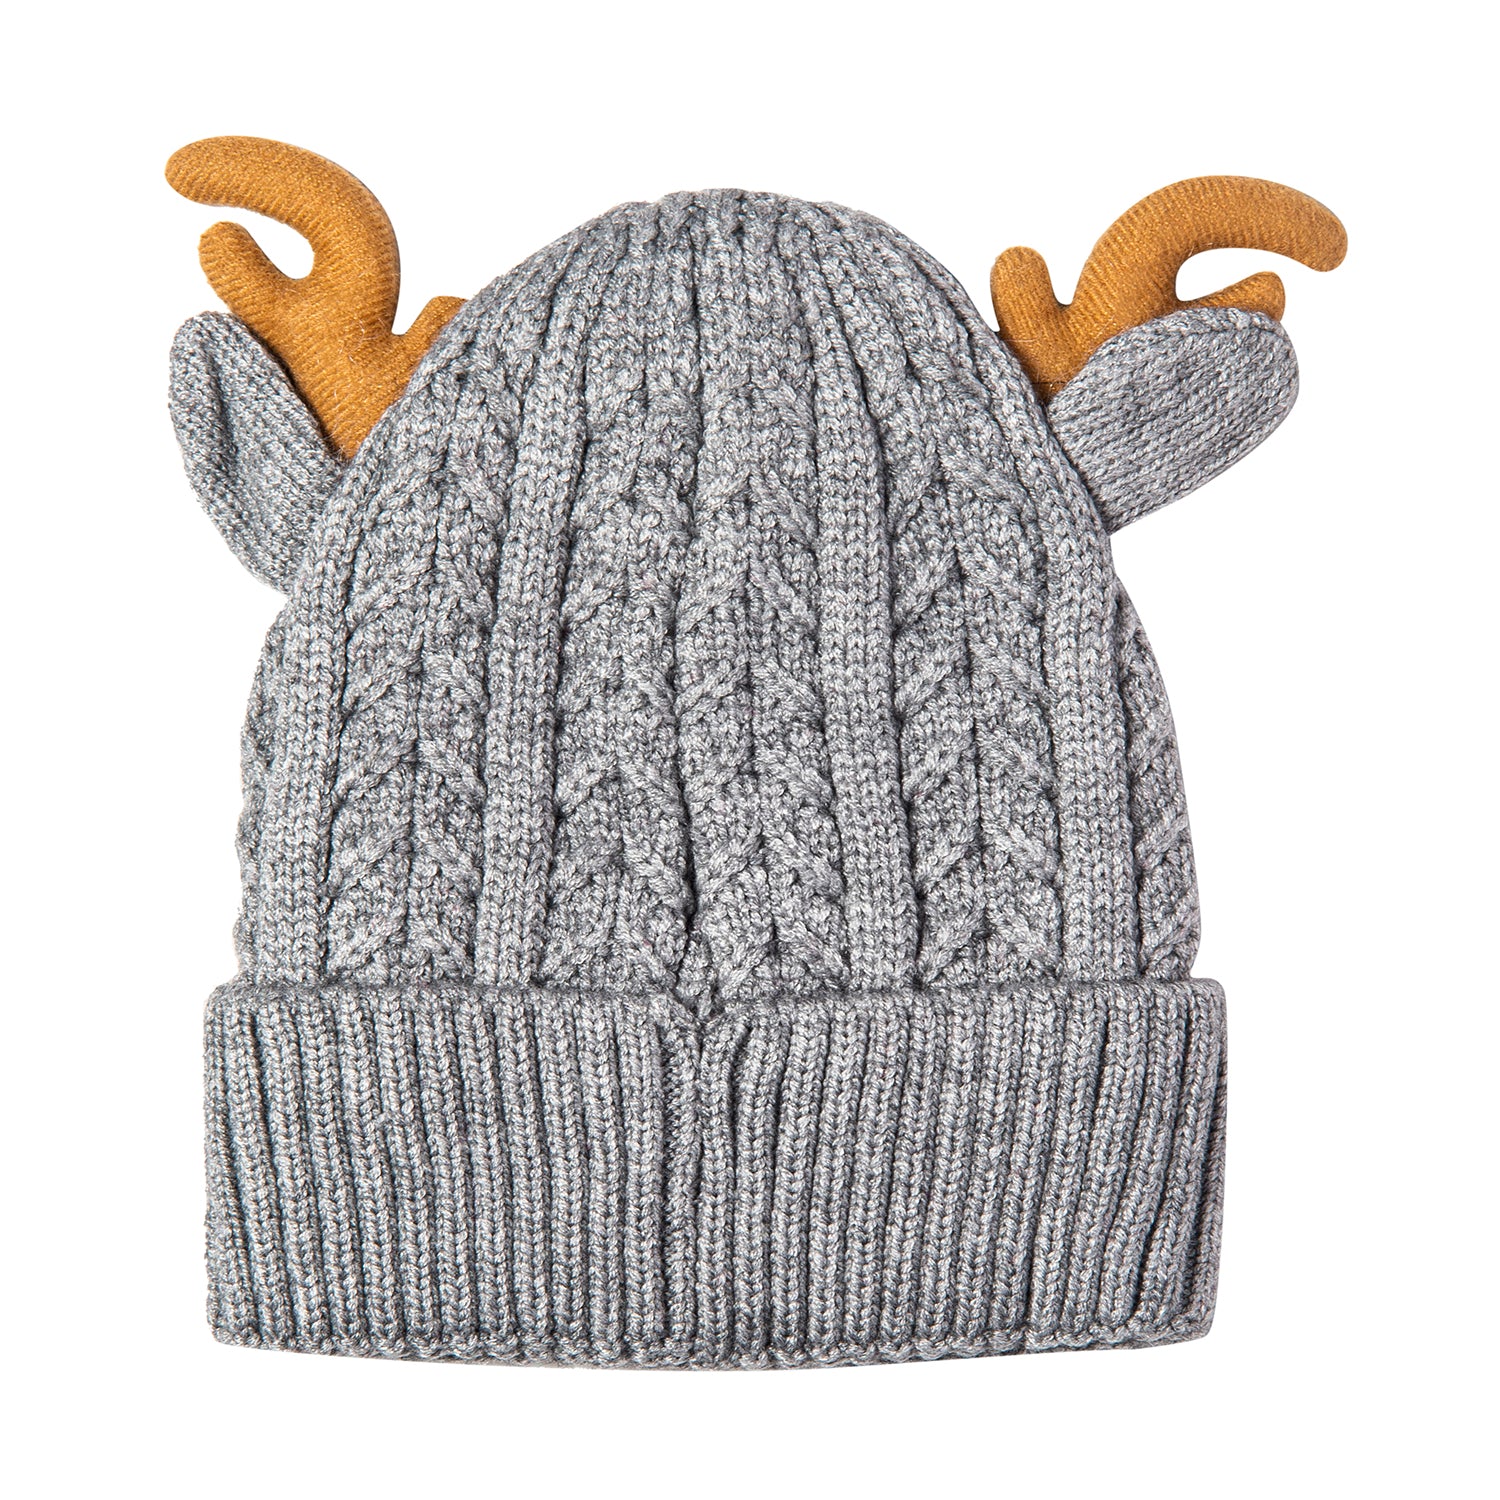 Knit Woollen Cap 3D Alphabet Antler Grey - Baby Moo